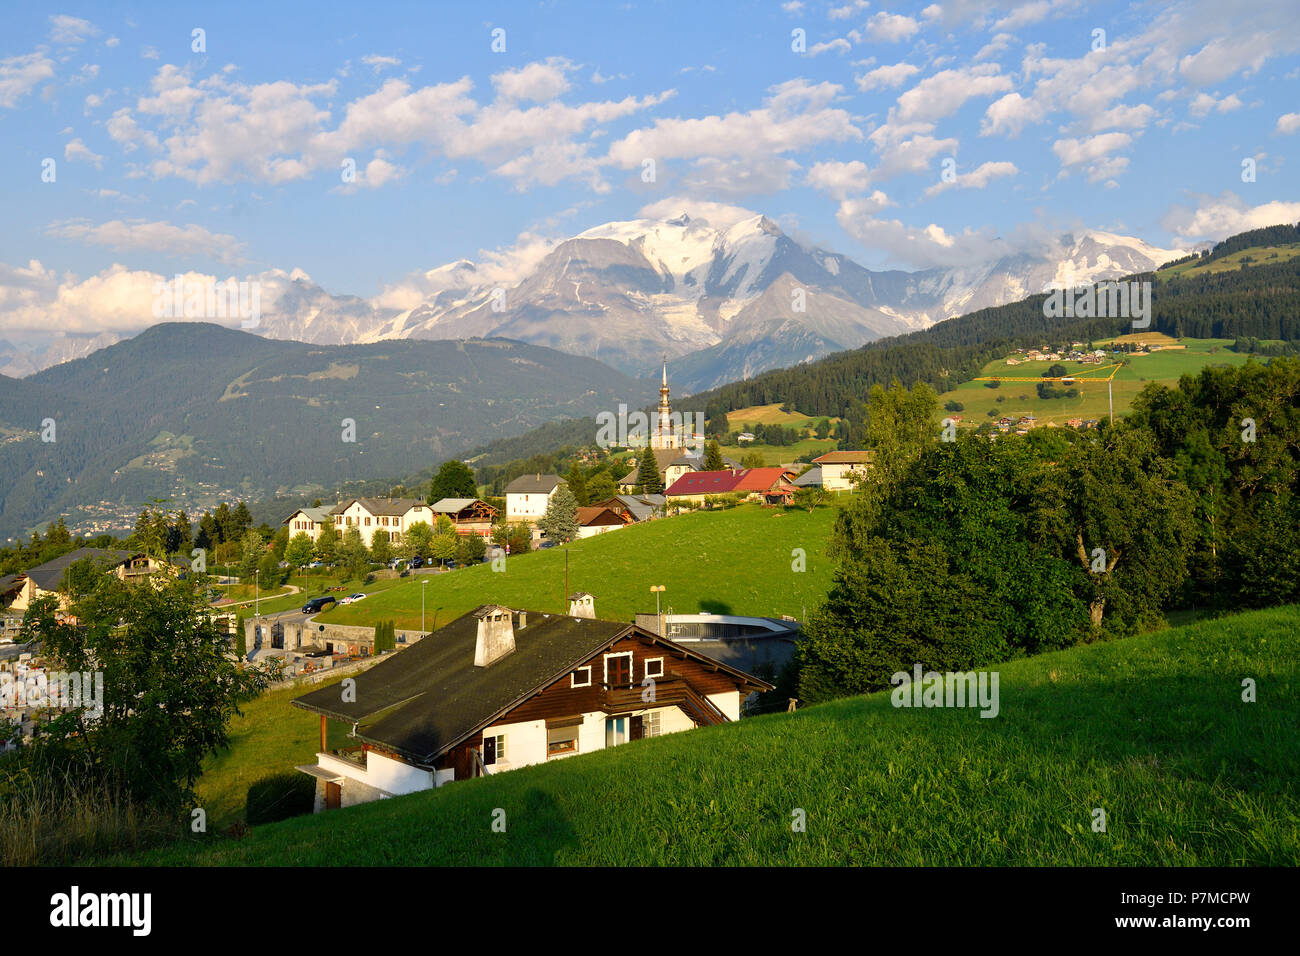 France, Haute Savoie, Combloux, Les sentiers du baroque, St Nicolas church and Mont Blanc peak (4810m) Stock Photo